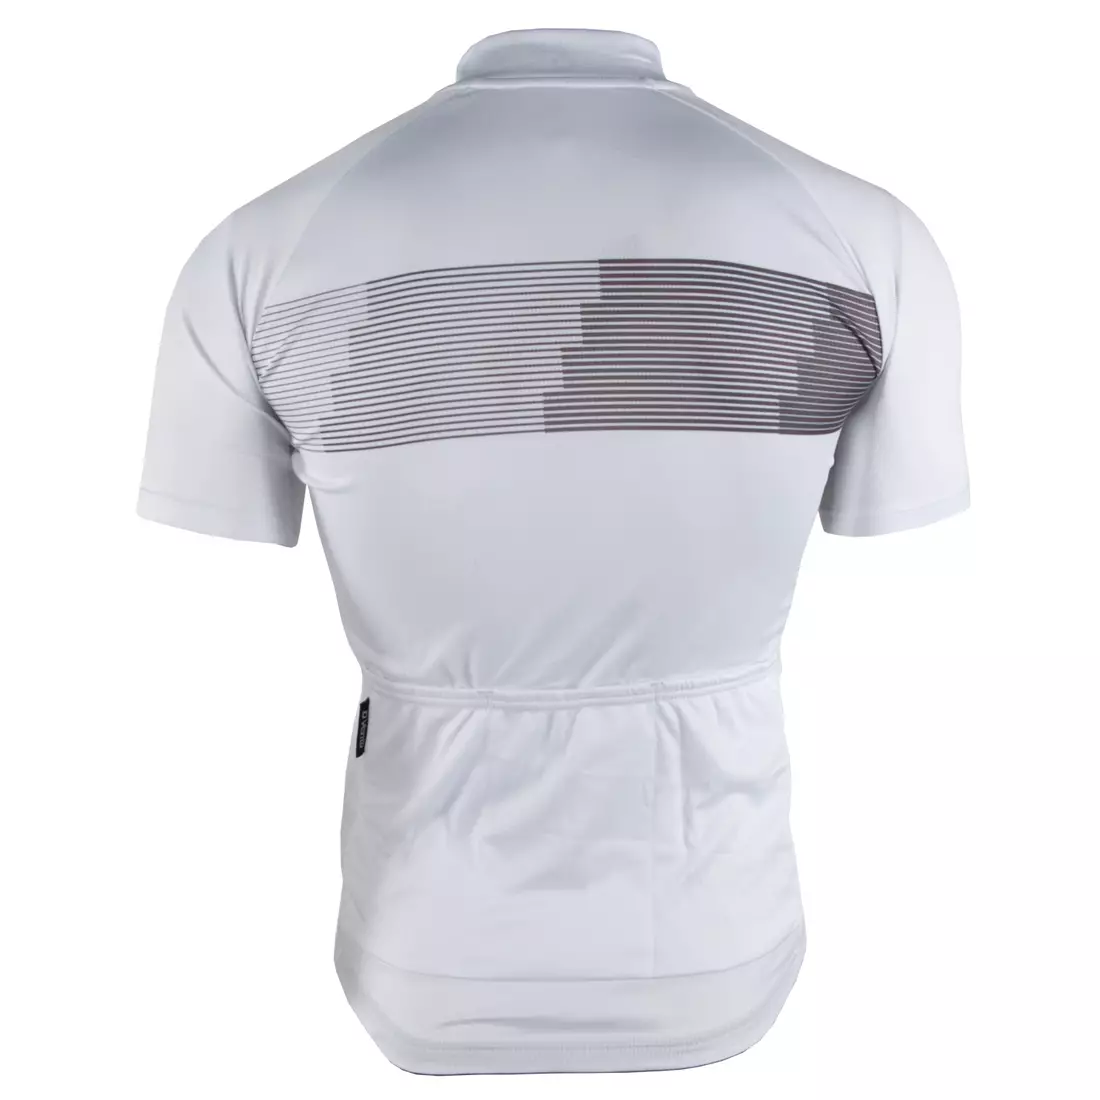 DEKO STYLE-0421 pánsky cyklistický dres s krátkym rukávom, biely